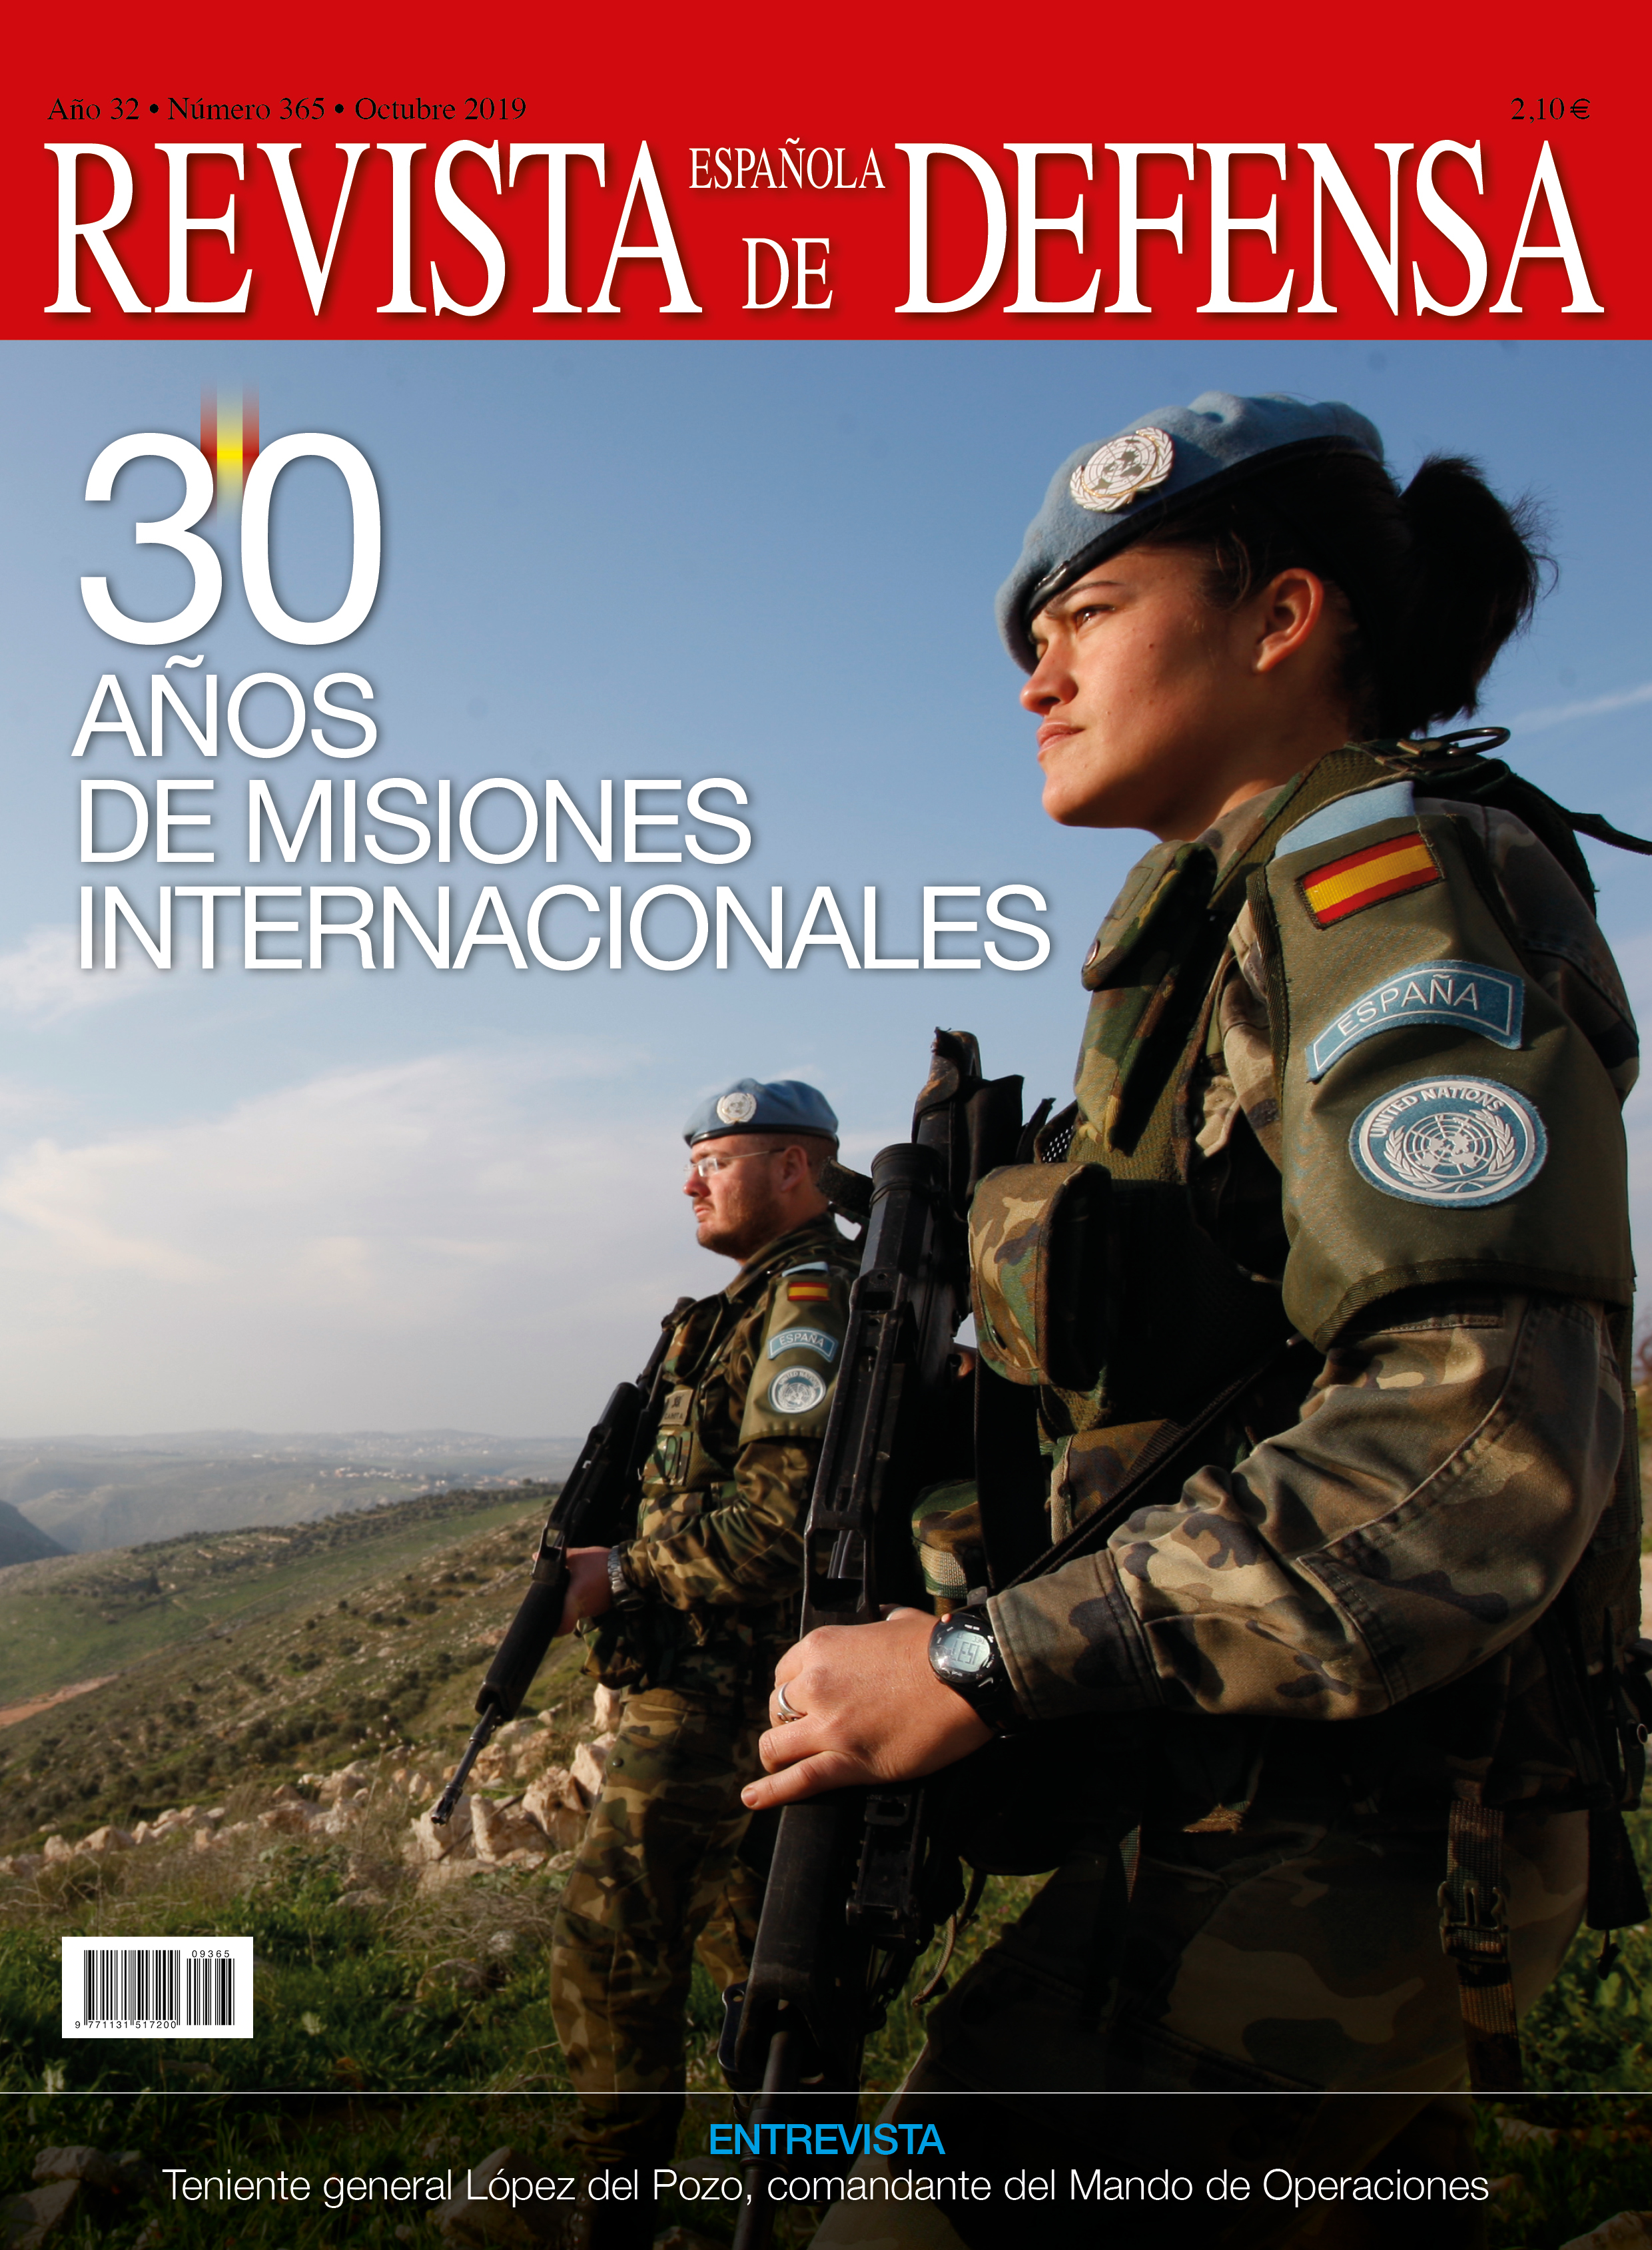 30 años de misiones internacionales. RED 365